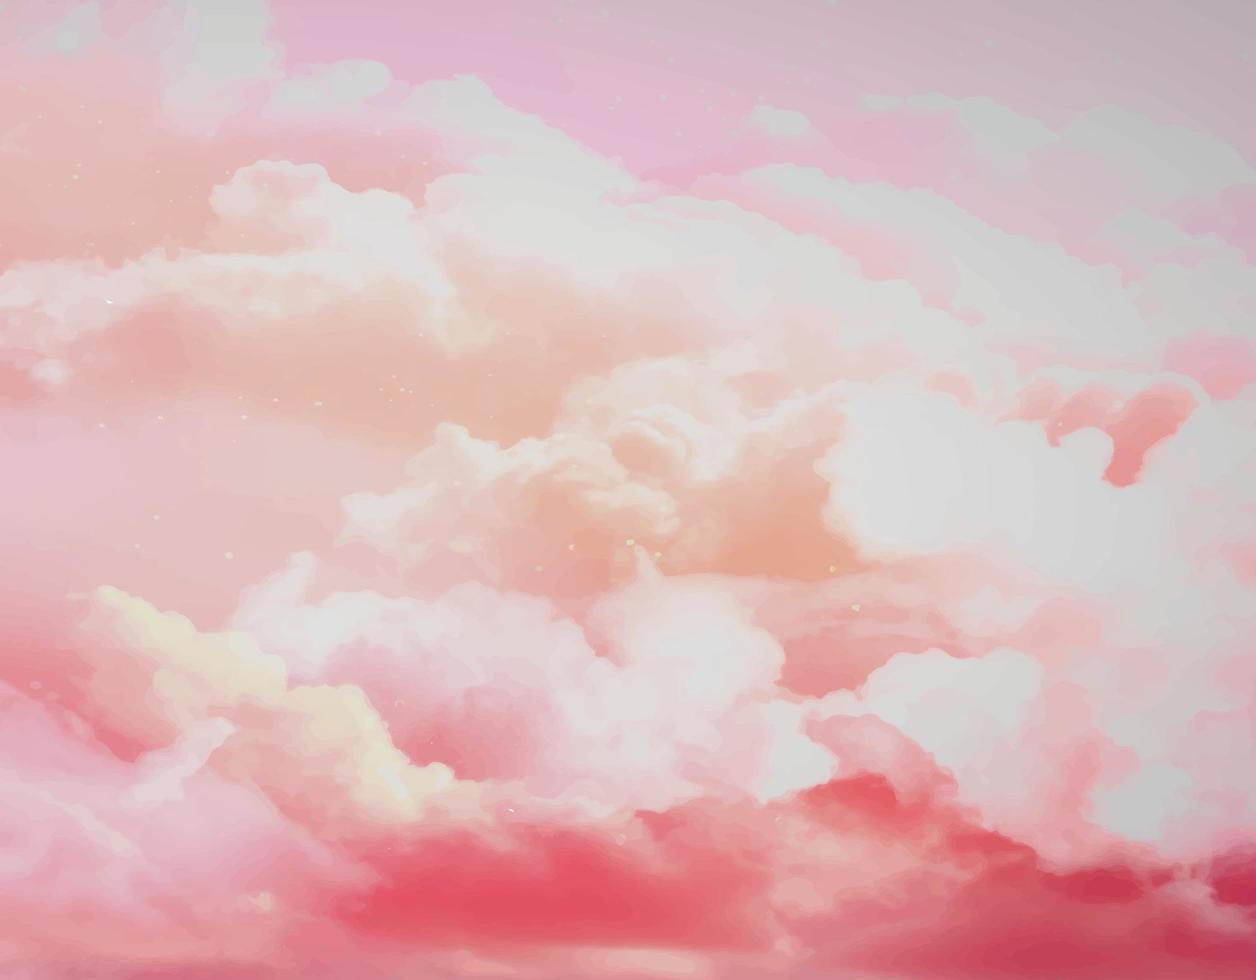 aquarellrosa himmelhintergrund mit weißen wolken.zuckerbaumwolle rosa wolken vektor design hintergrund. Fantasie-Pastellfarbe. Pastellhimmel-Vektorhintergrund.